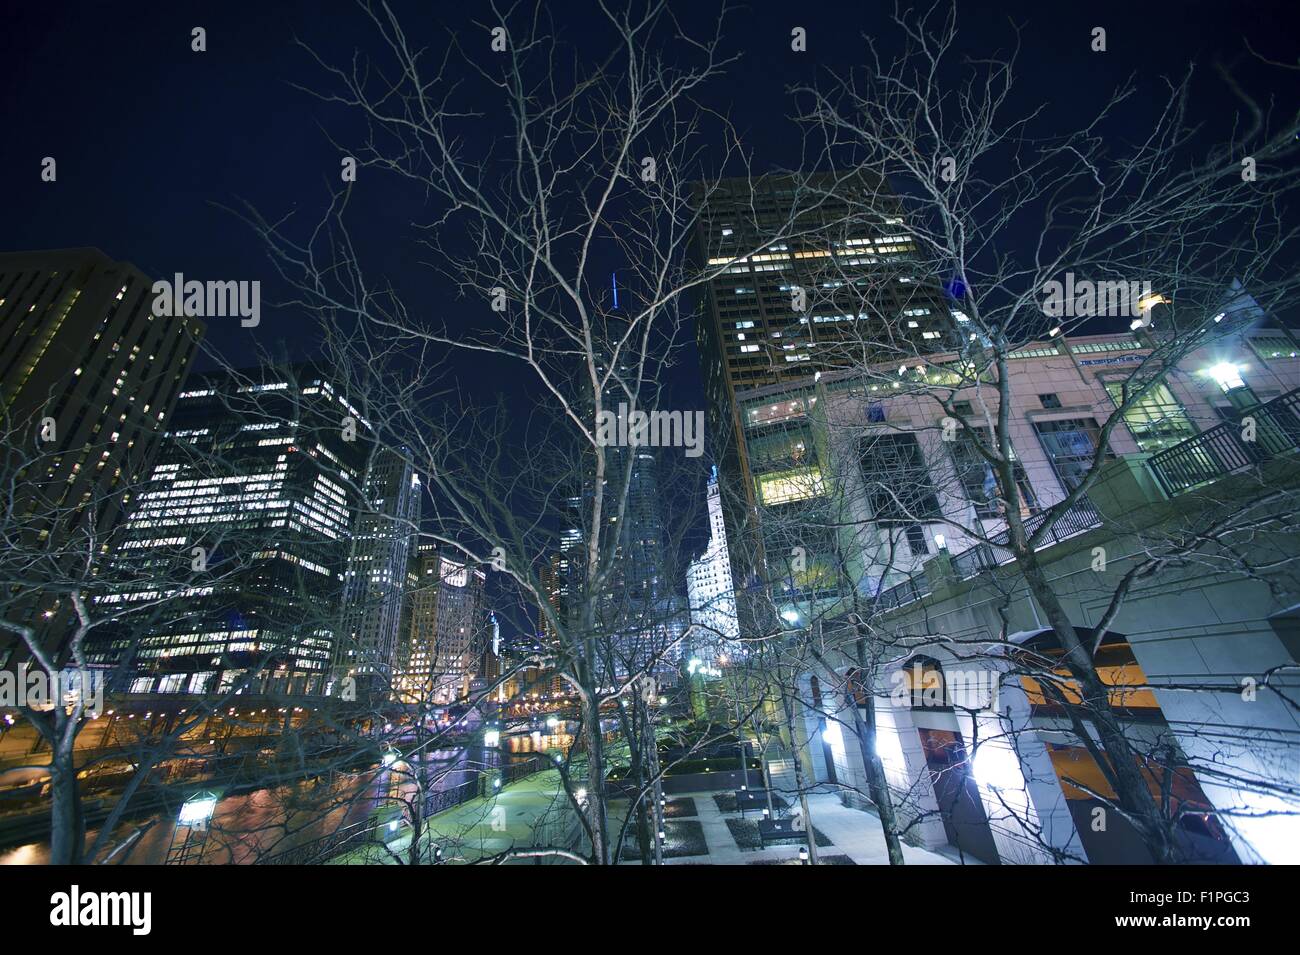 La città di Chicago, Illinois, Stati Uniti d'America. Moderna città americana - Chicago, IL by night. Illuminazioni della citta'. Orizzontale ad angolo ampio foto Foto Stock